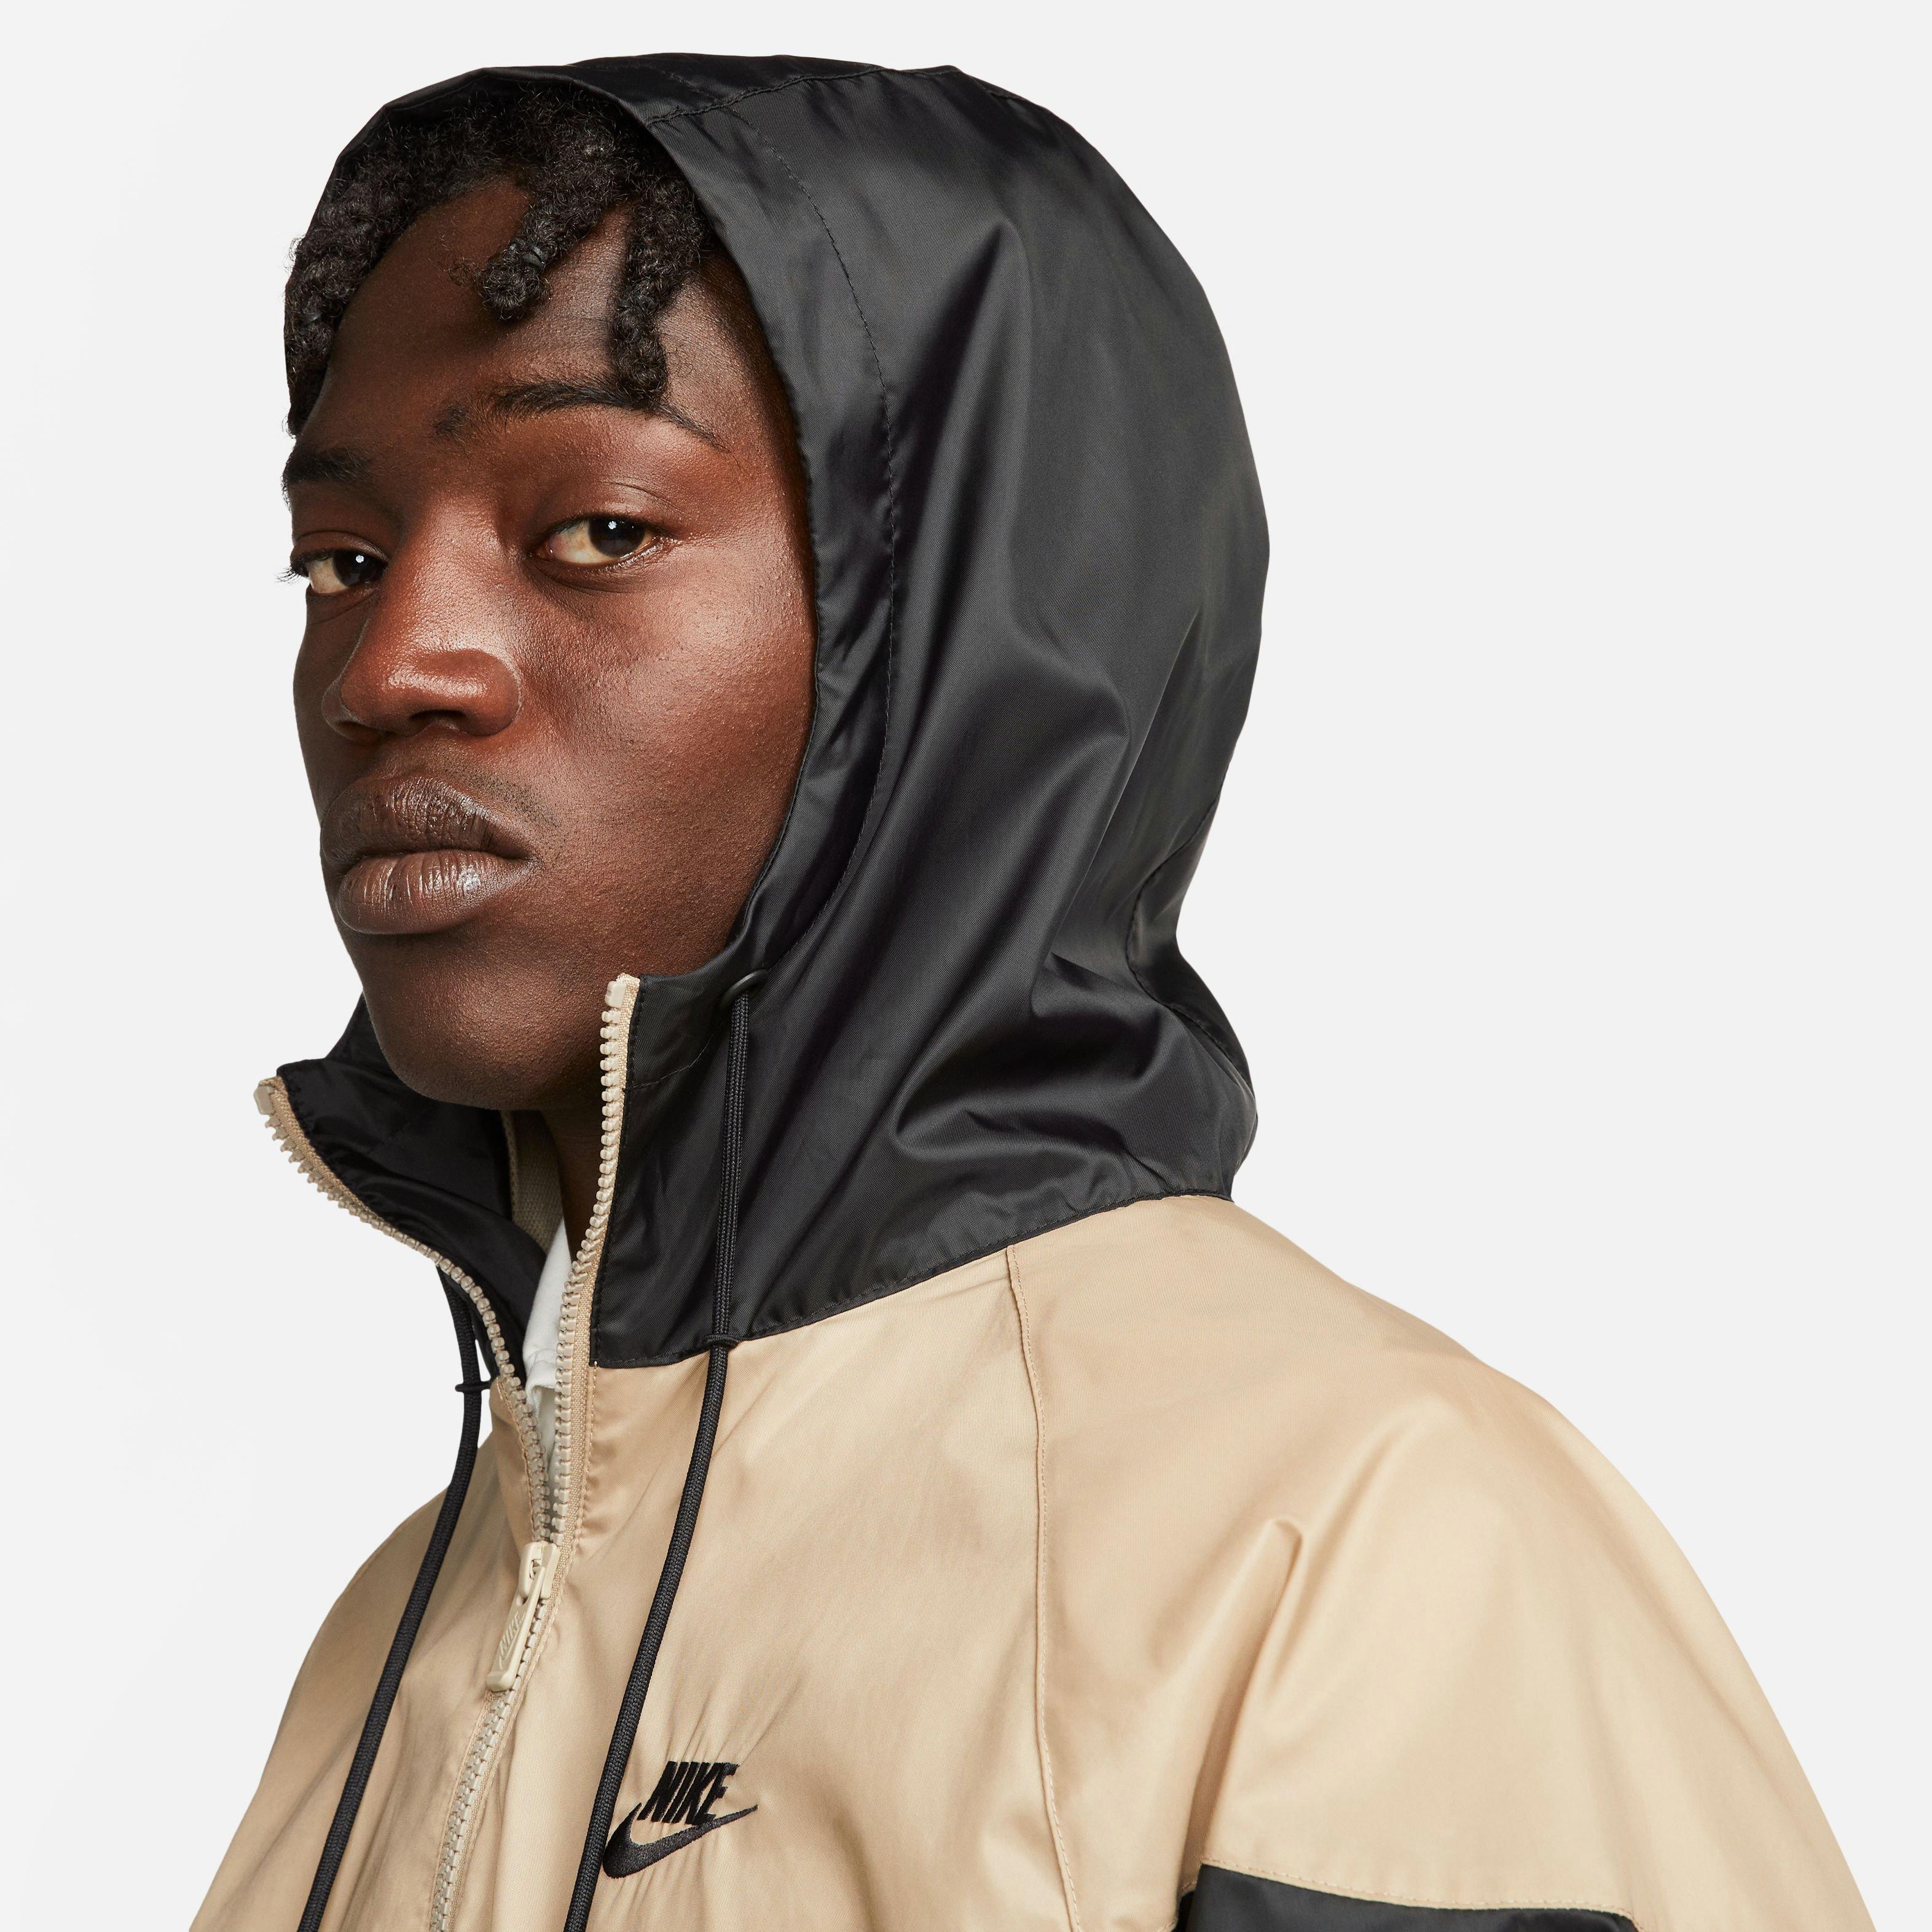 Nike Men's Woven Windrunner Hooded Jacket - Black/Khaki - Hibbett